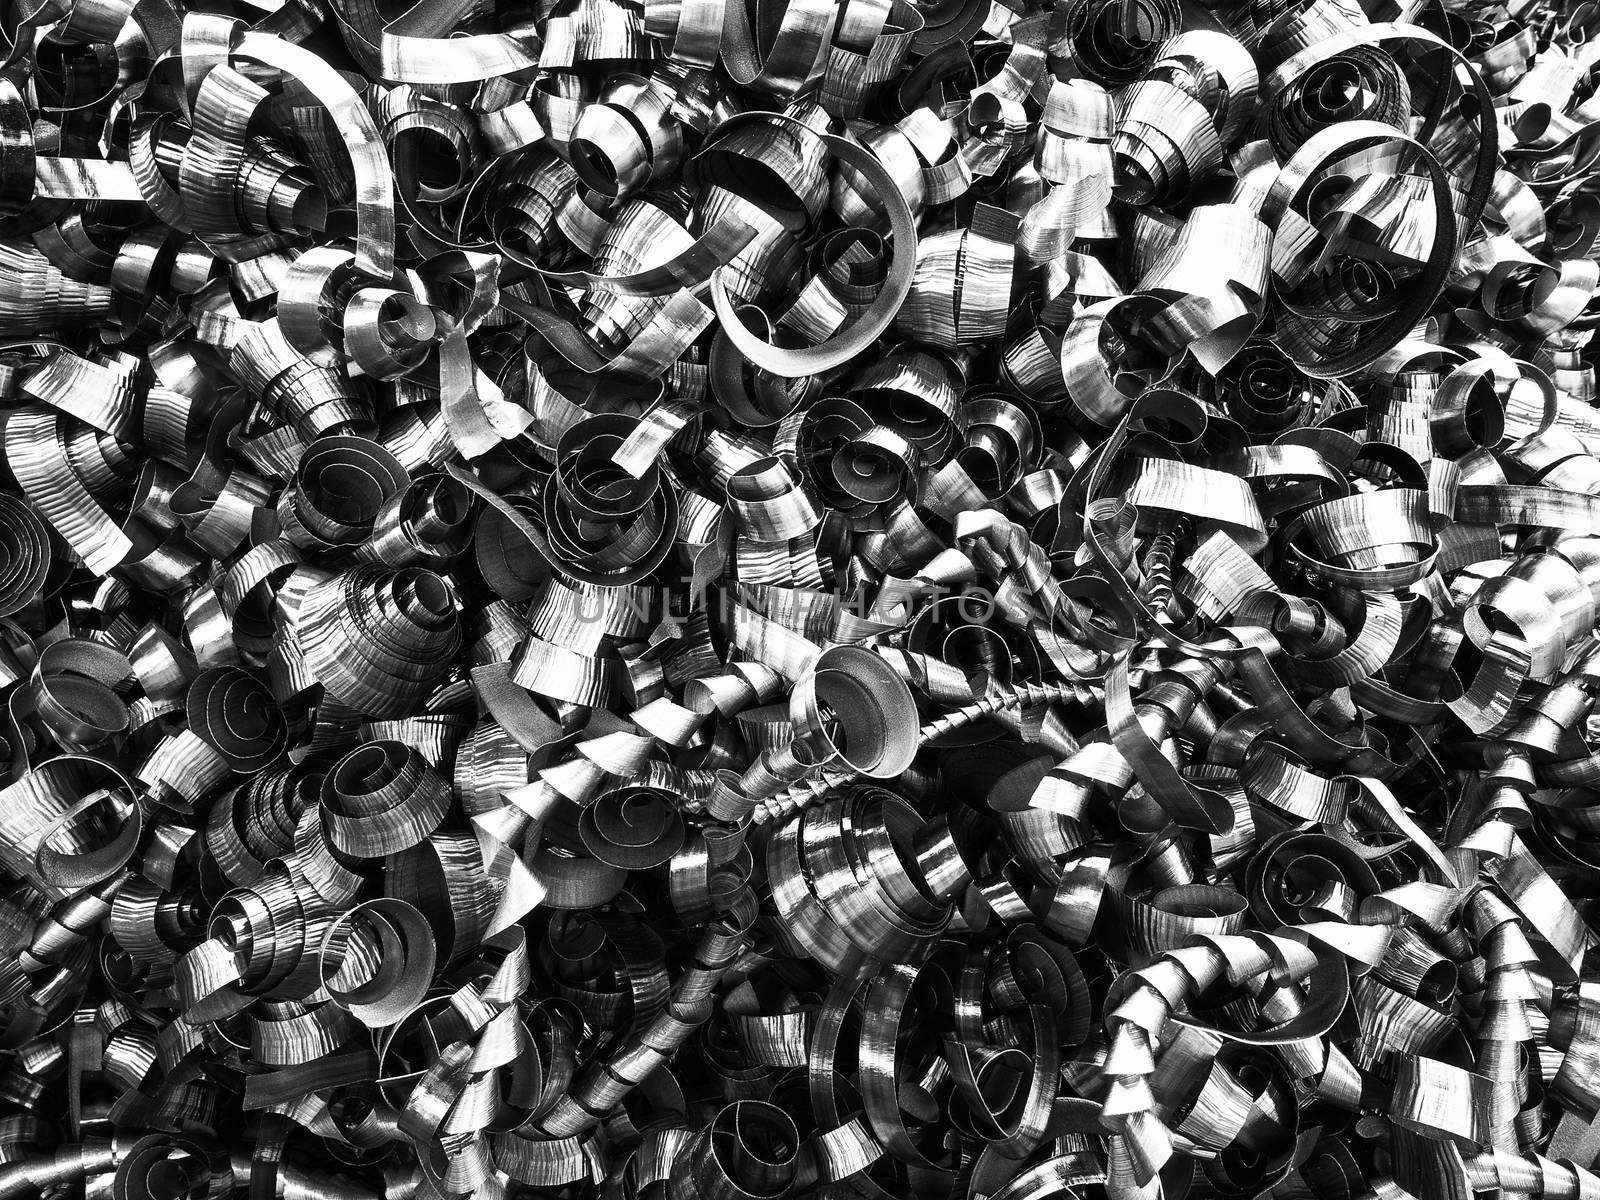 Black and White image of iron turnings pile